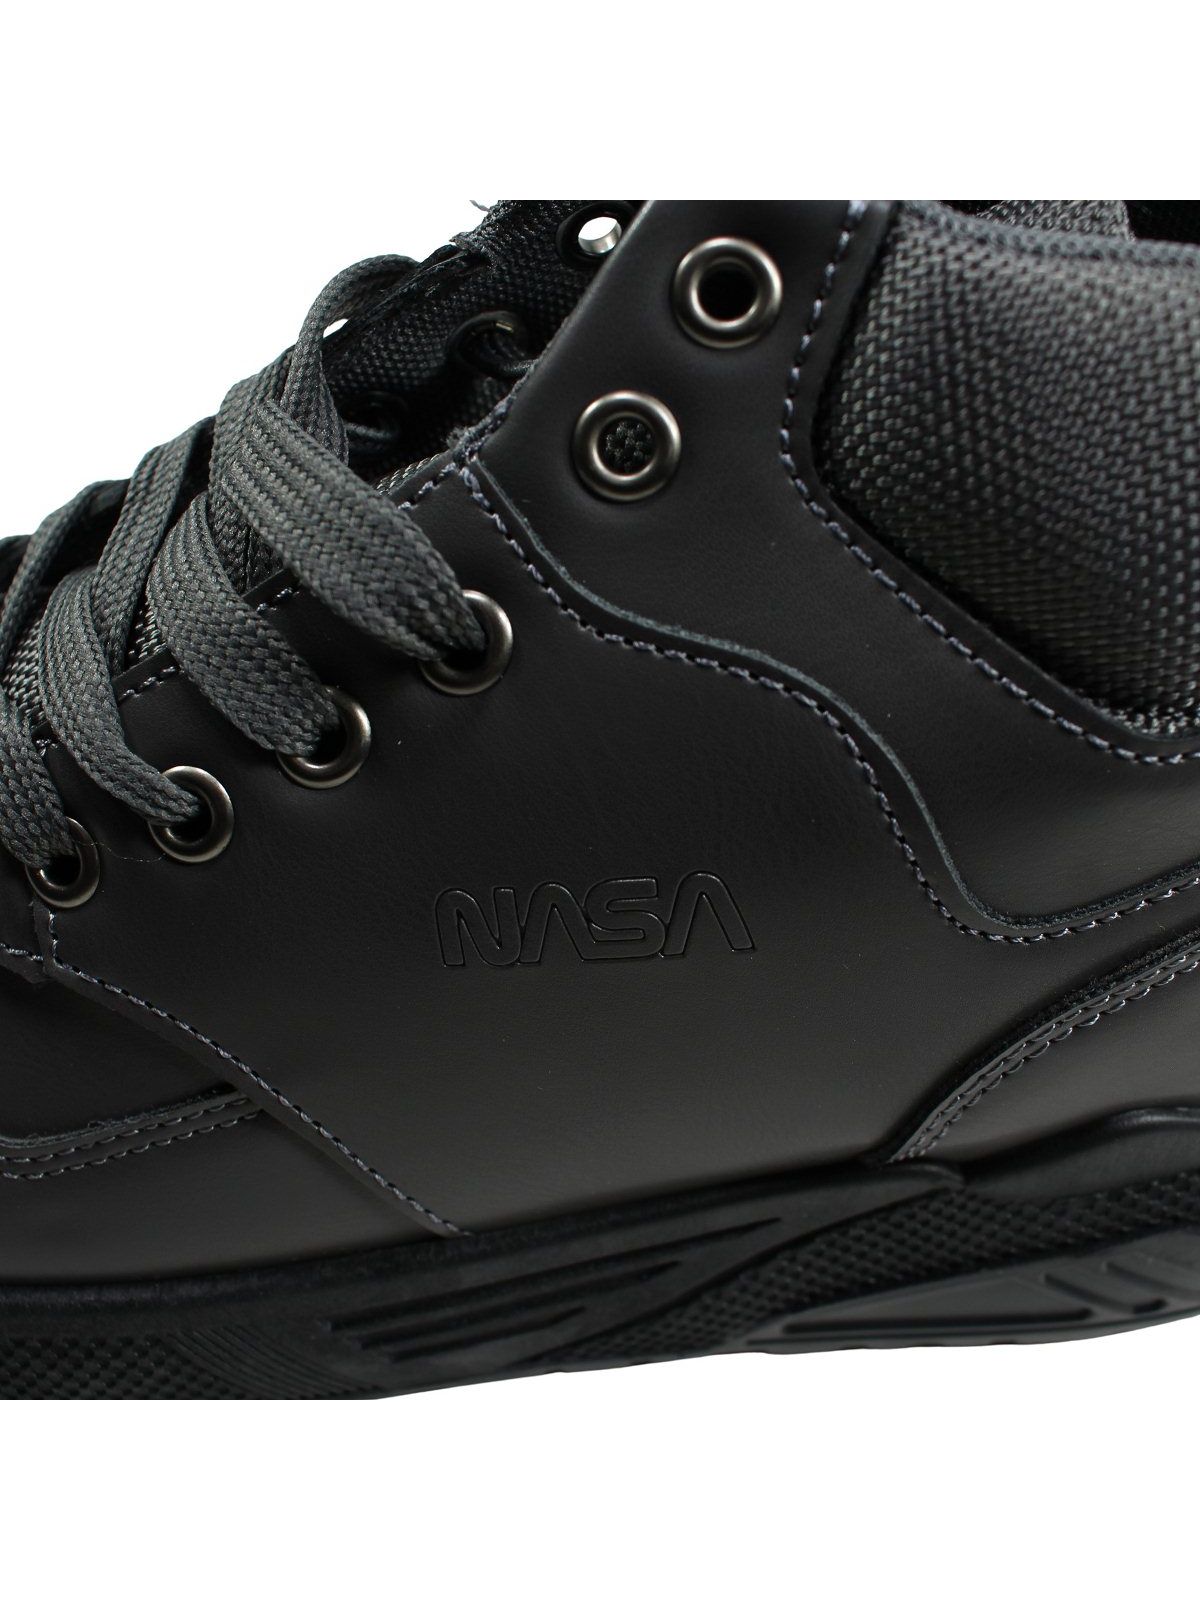 Nasa Men's Sneaker